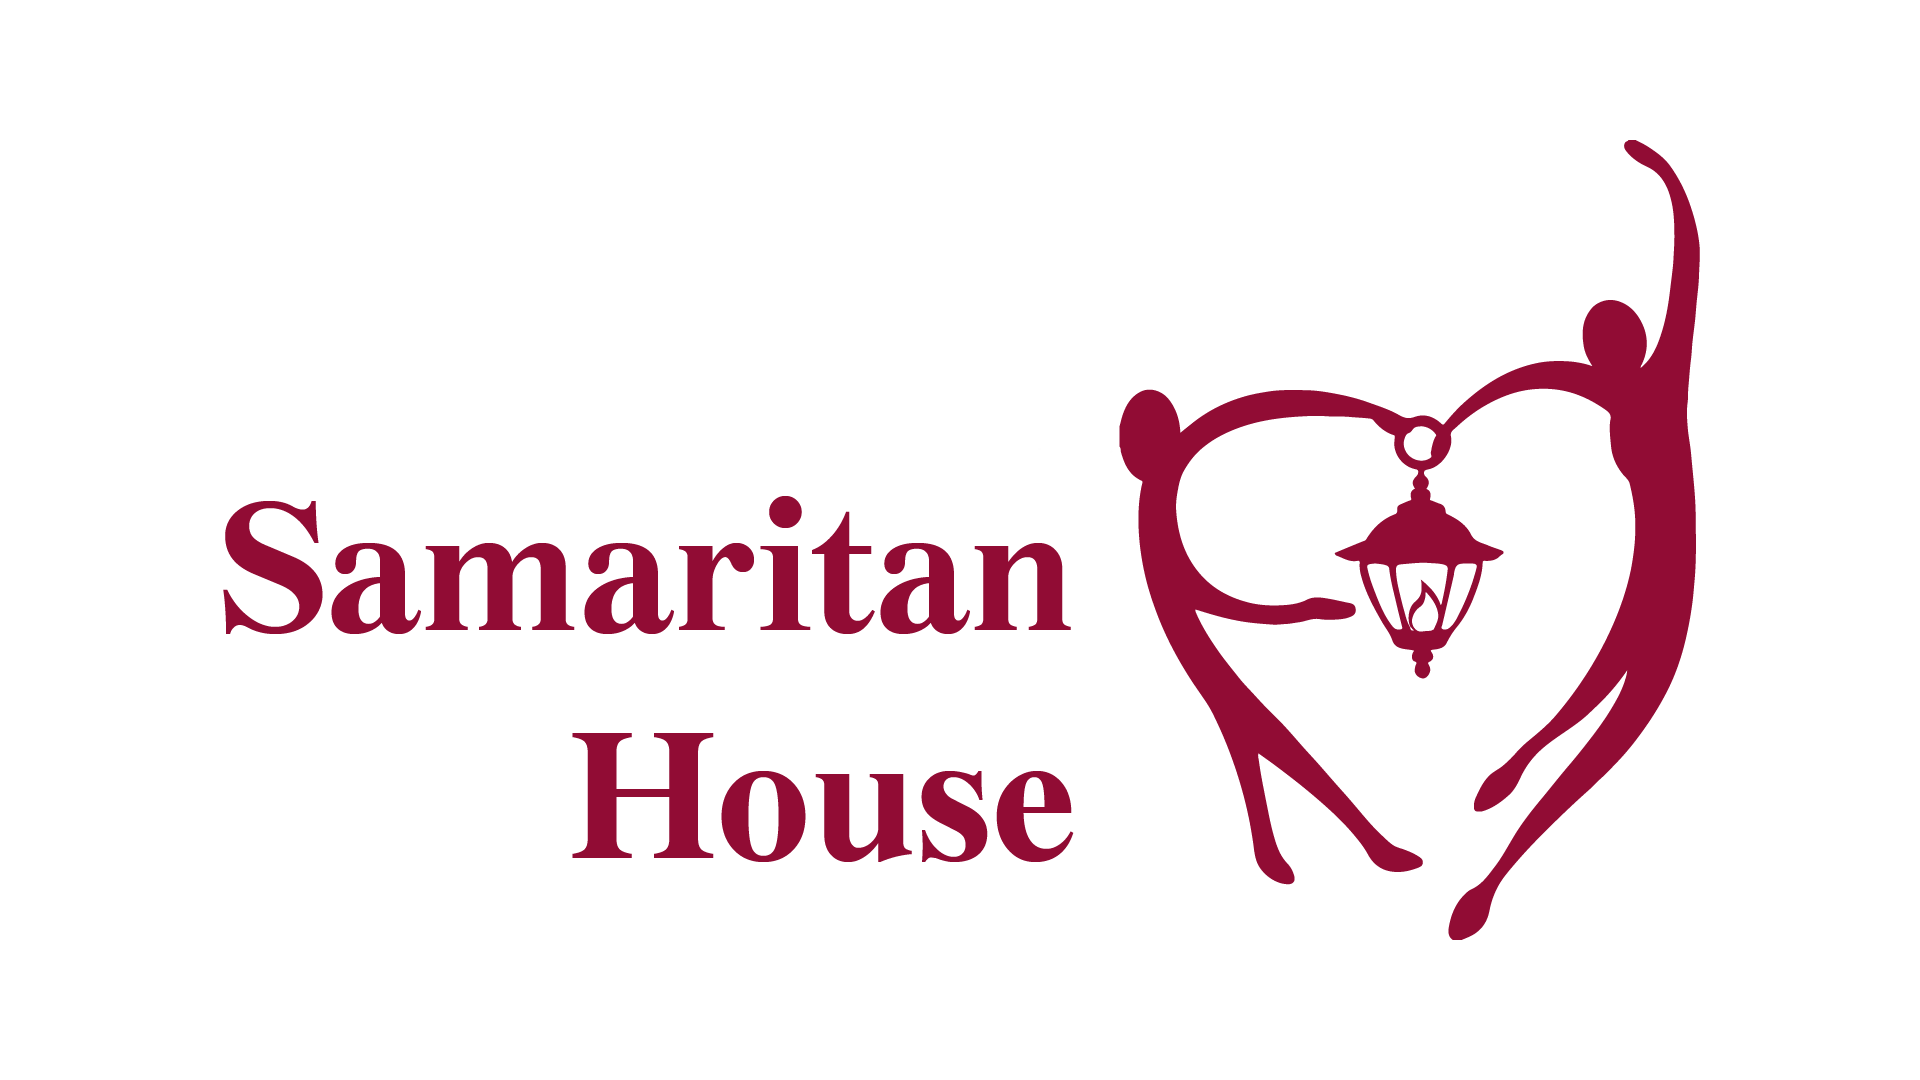 Samaritan House